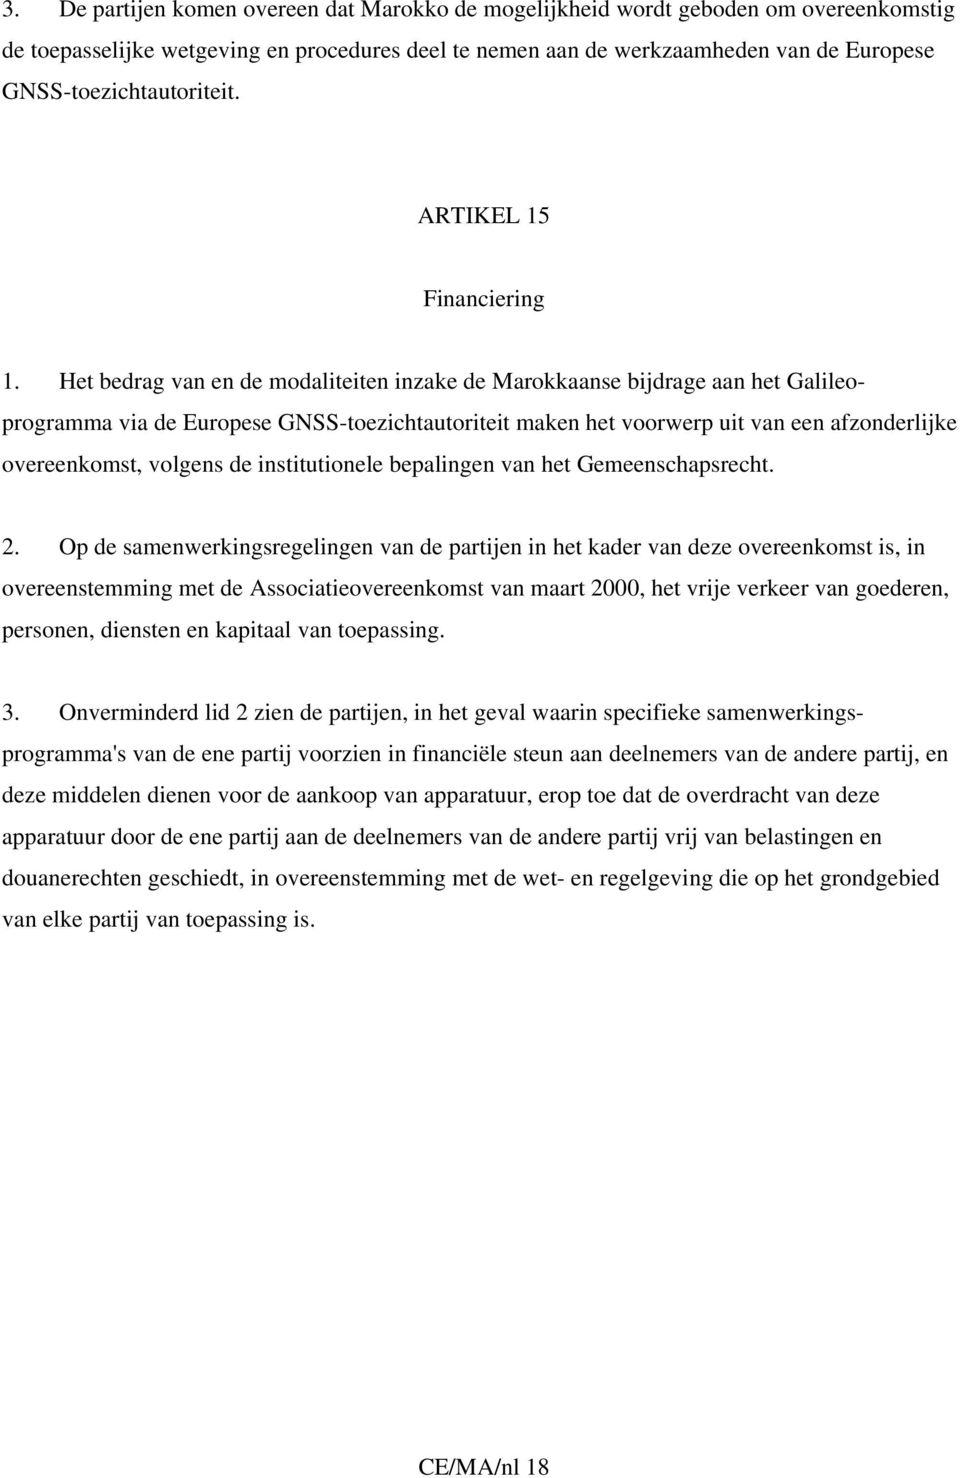 Het bedrag van en de modaliteiten inzake de Marokkaanse bijdrage aan het Galileoprogramma via de Europese GNSS-toezichtautoriteit maken het voorwerp uit van een afzonderlijke overeenkomst, volgens de